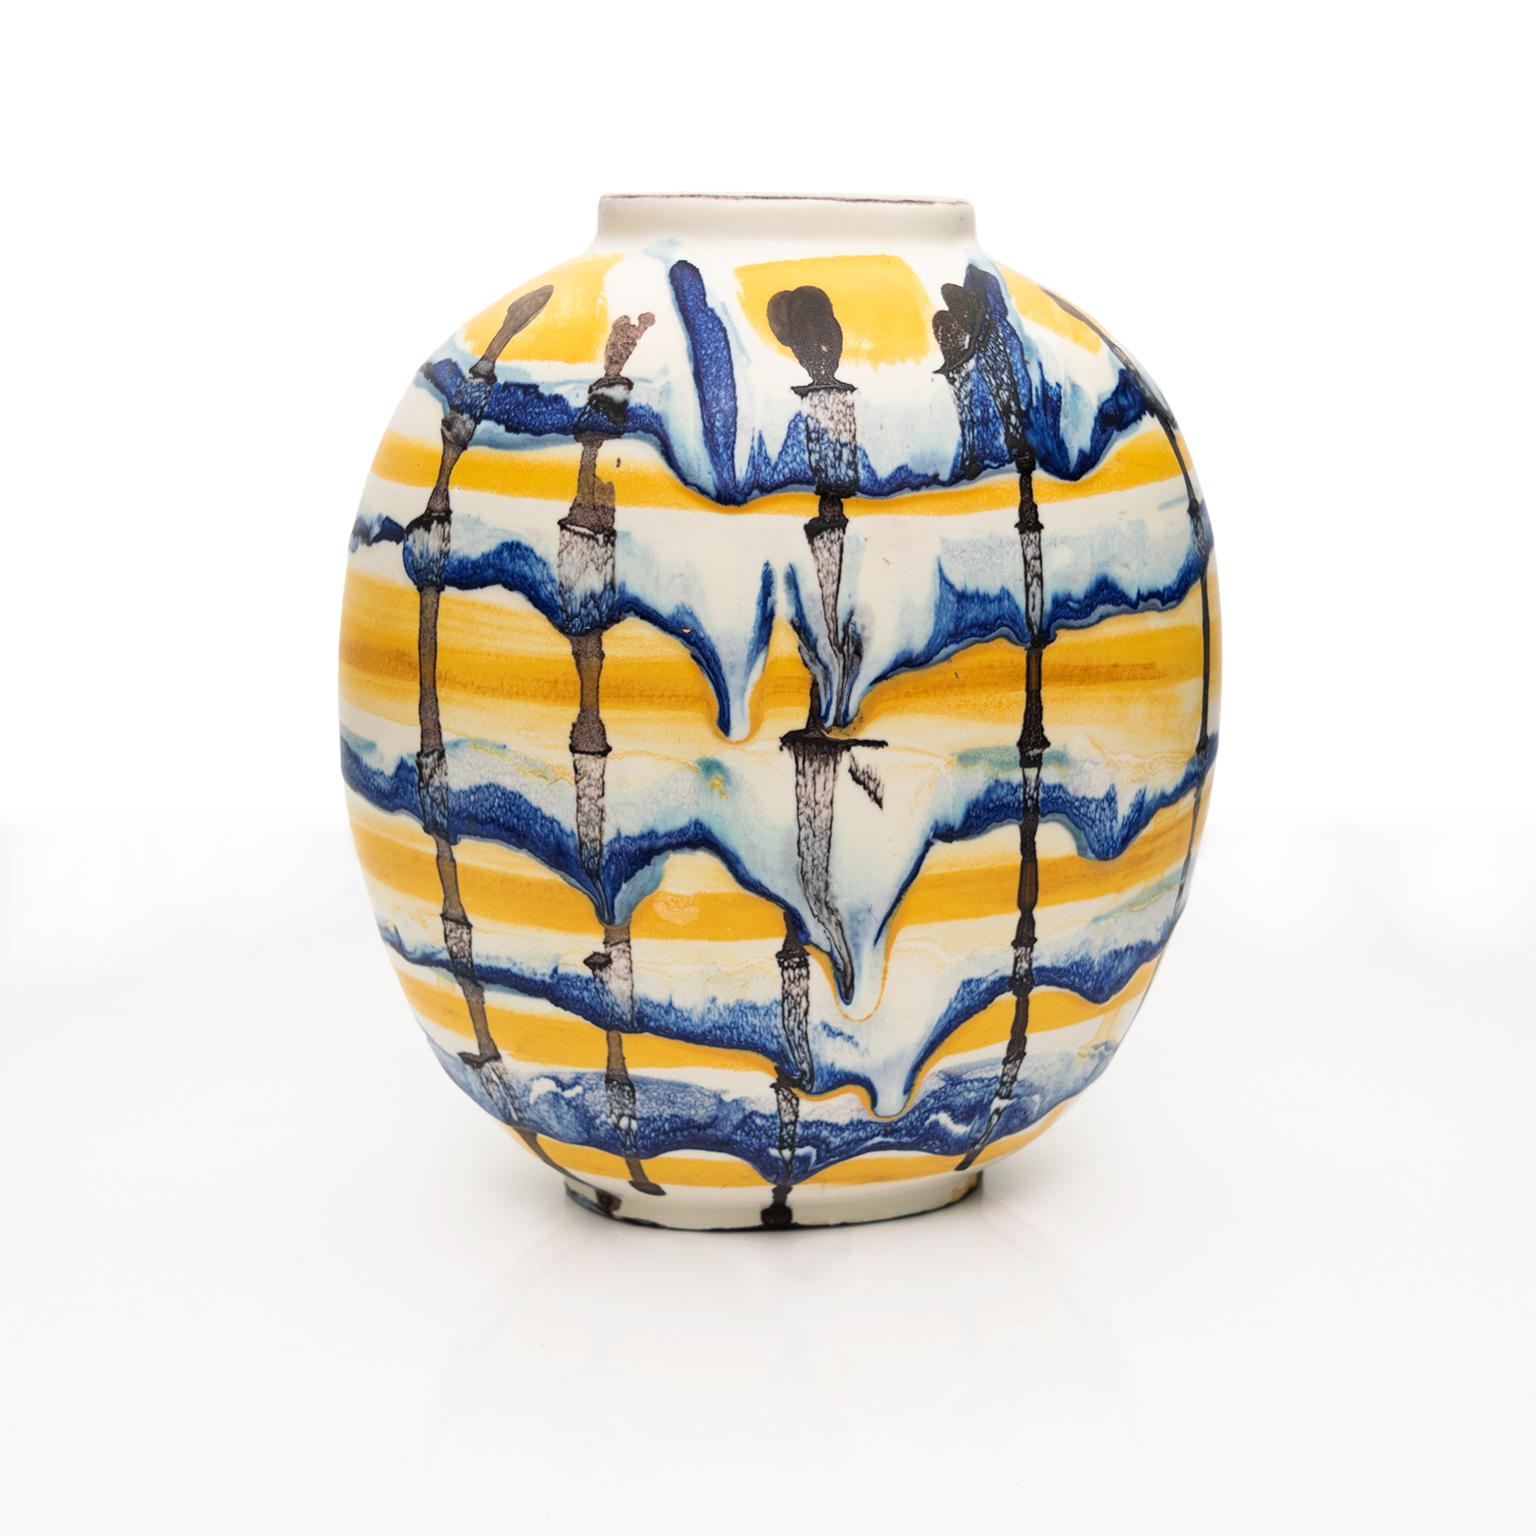 Eine handdekorierte glasierte Vase des Künstlers Carl-Harry Stalhane für Rorstrand, Schweden. Die Vase hat ein loses Gittermuster aus Blau, Gelb und Dunkelbraun/Schwarz auf weißem Grund. Signiert und datiert auf dem Boden 